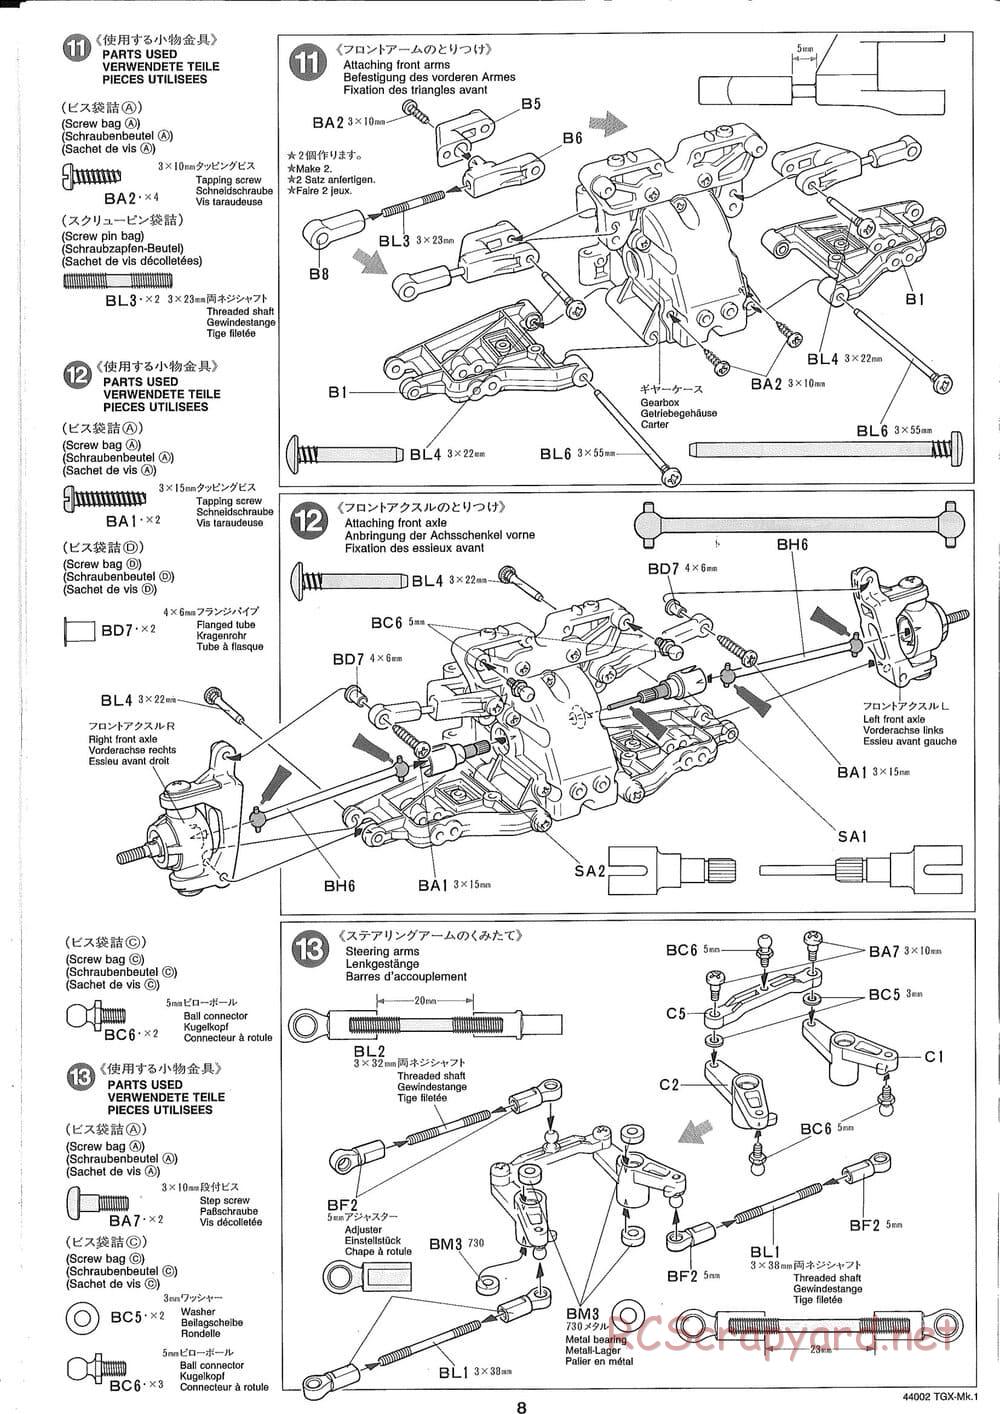 Tamiya - TGX Mk.1 TS Chassis Chassis - Manual - Page 8